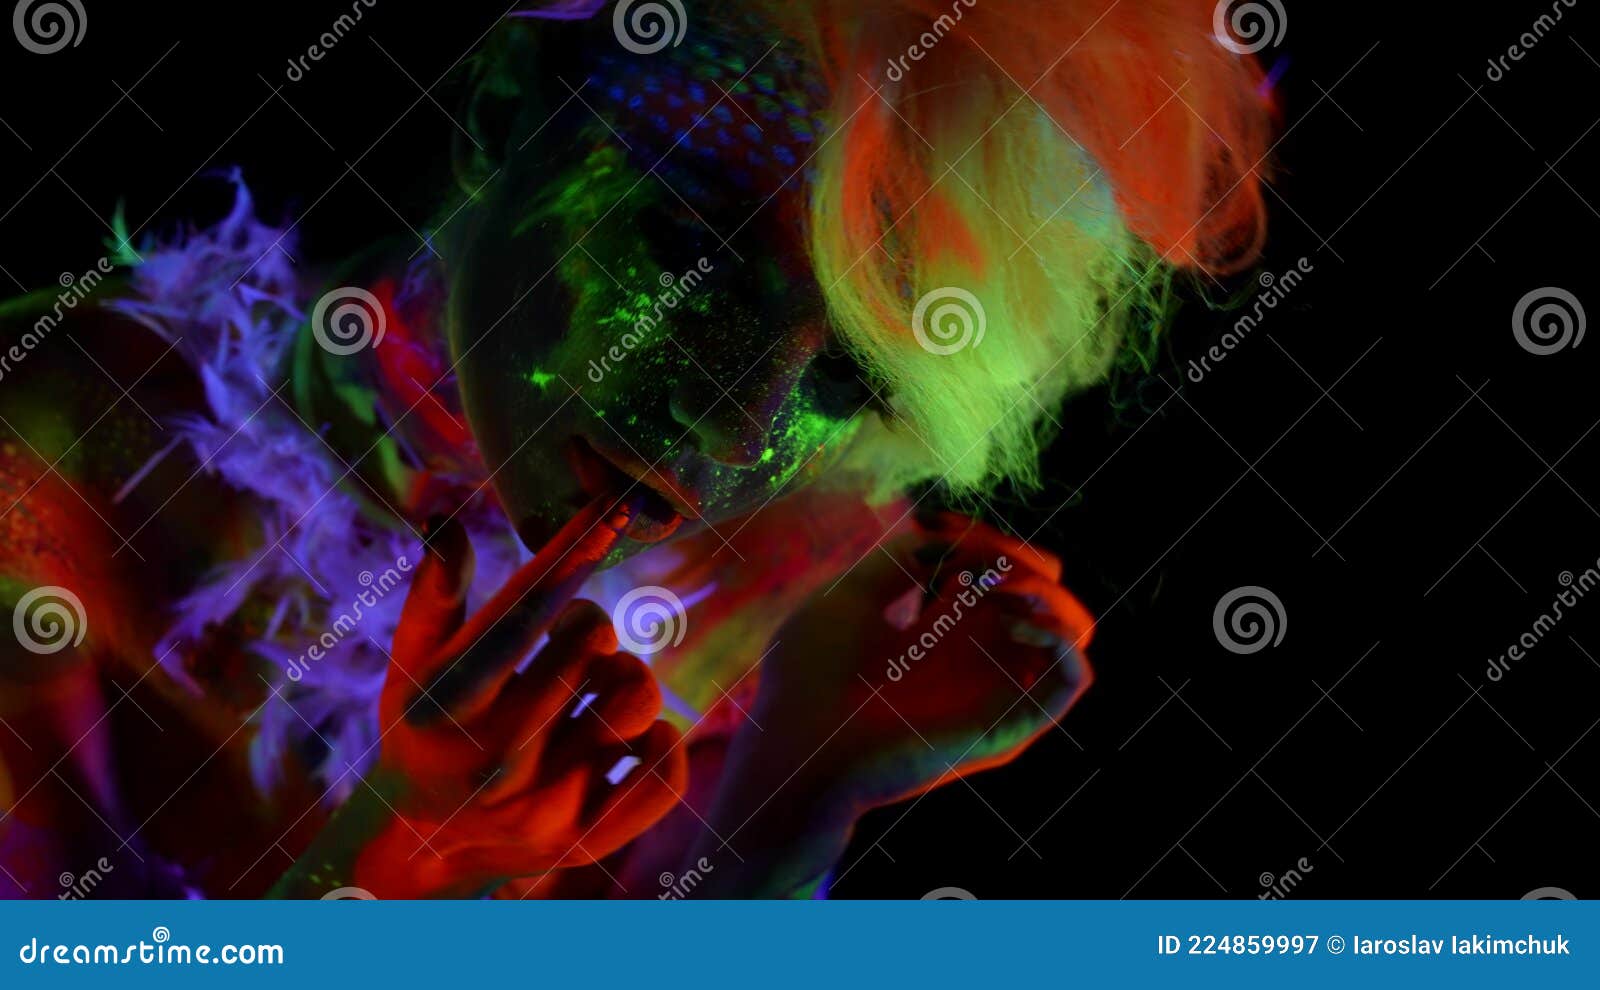 δημιουργικό μακιγιάζ και ζωγραφική του σώματος με φθορίζοντα χρώματα γυναικεία  φιγούρα στο σκοτάδι με υπεριώδη φώτα Στοκ Εικόνα - εικόνα από nightclub,  bodybuilders: 224859997